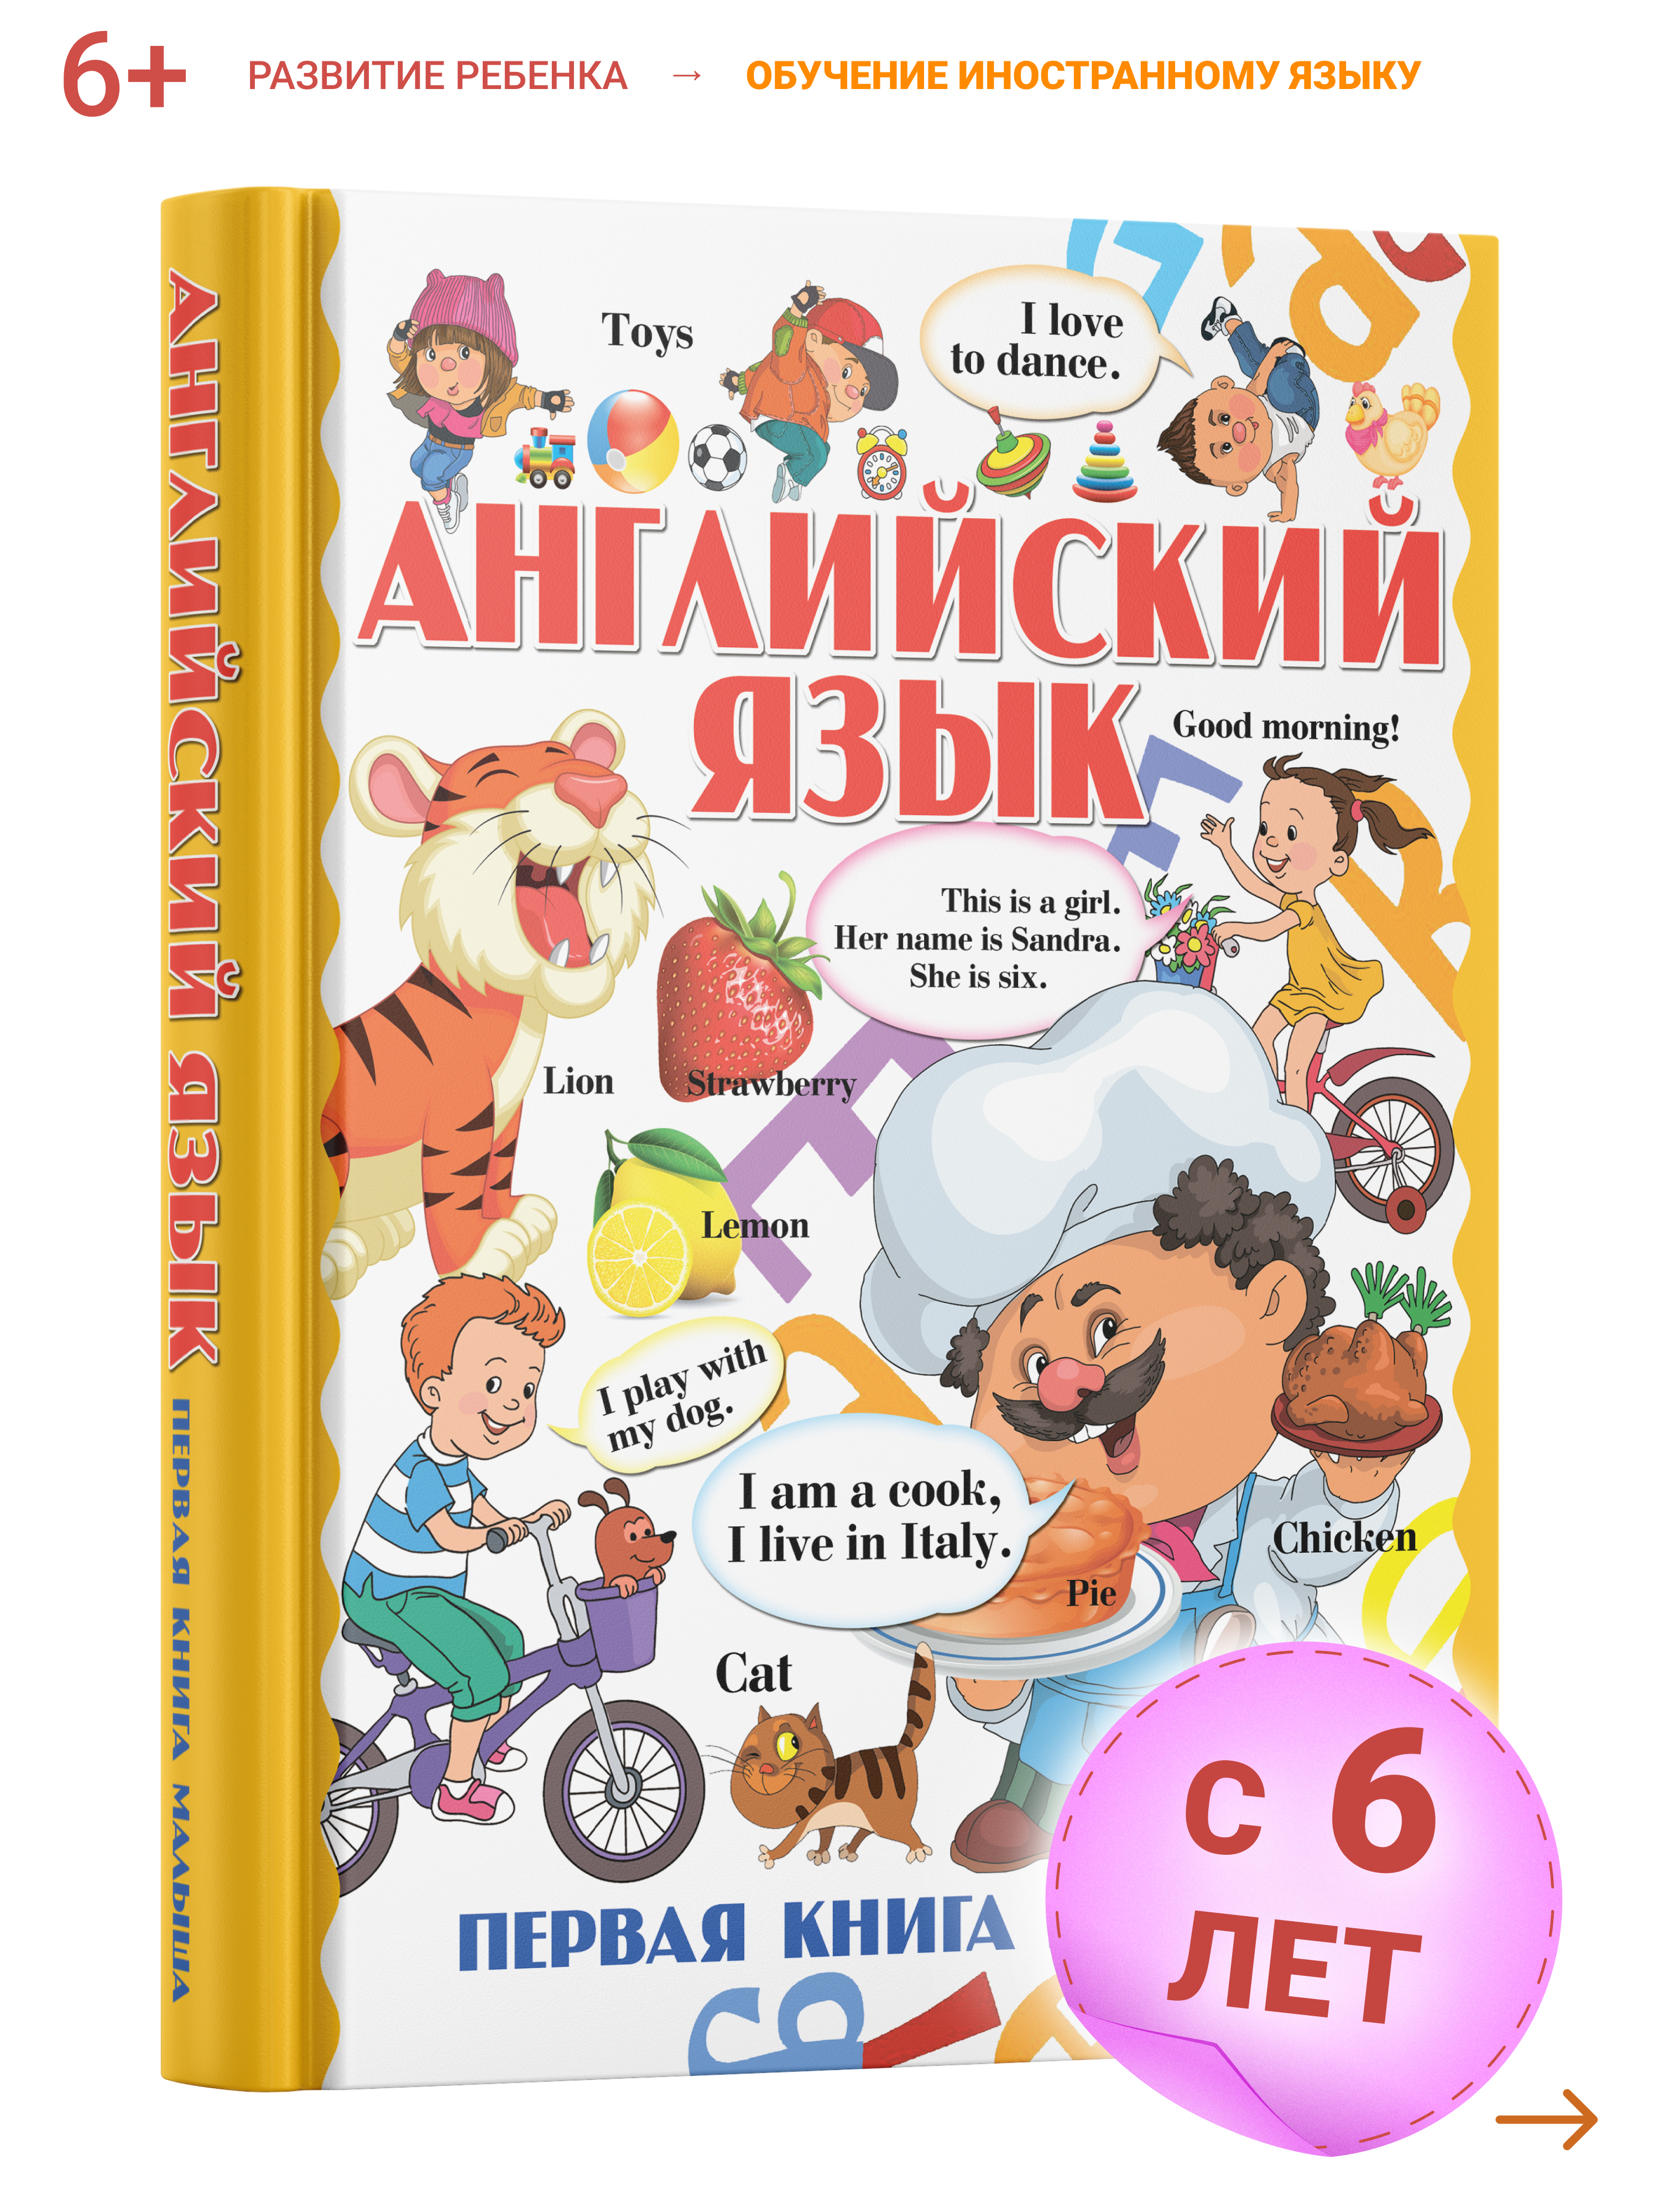 Классные детские книги на английском языке — для малышей и тех кто постарше!